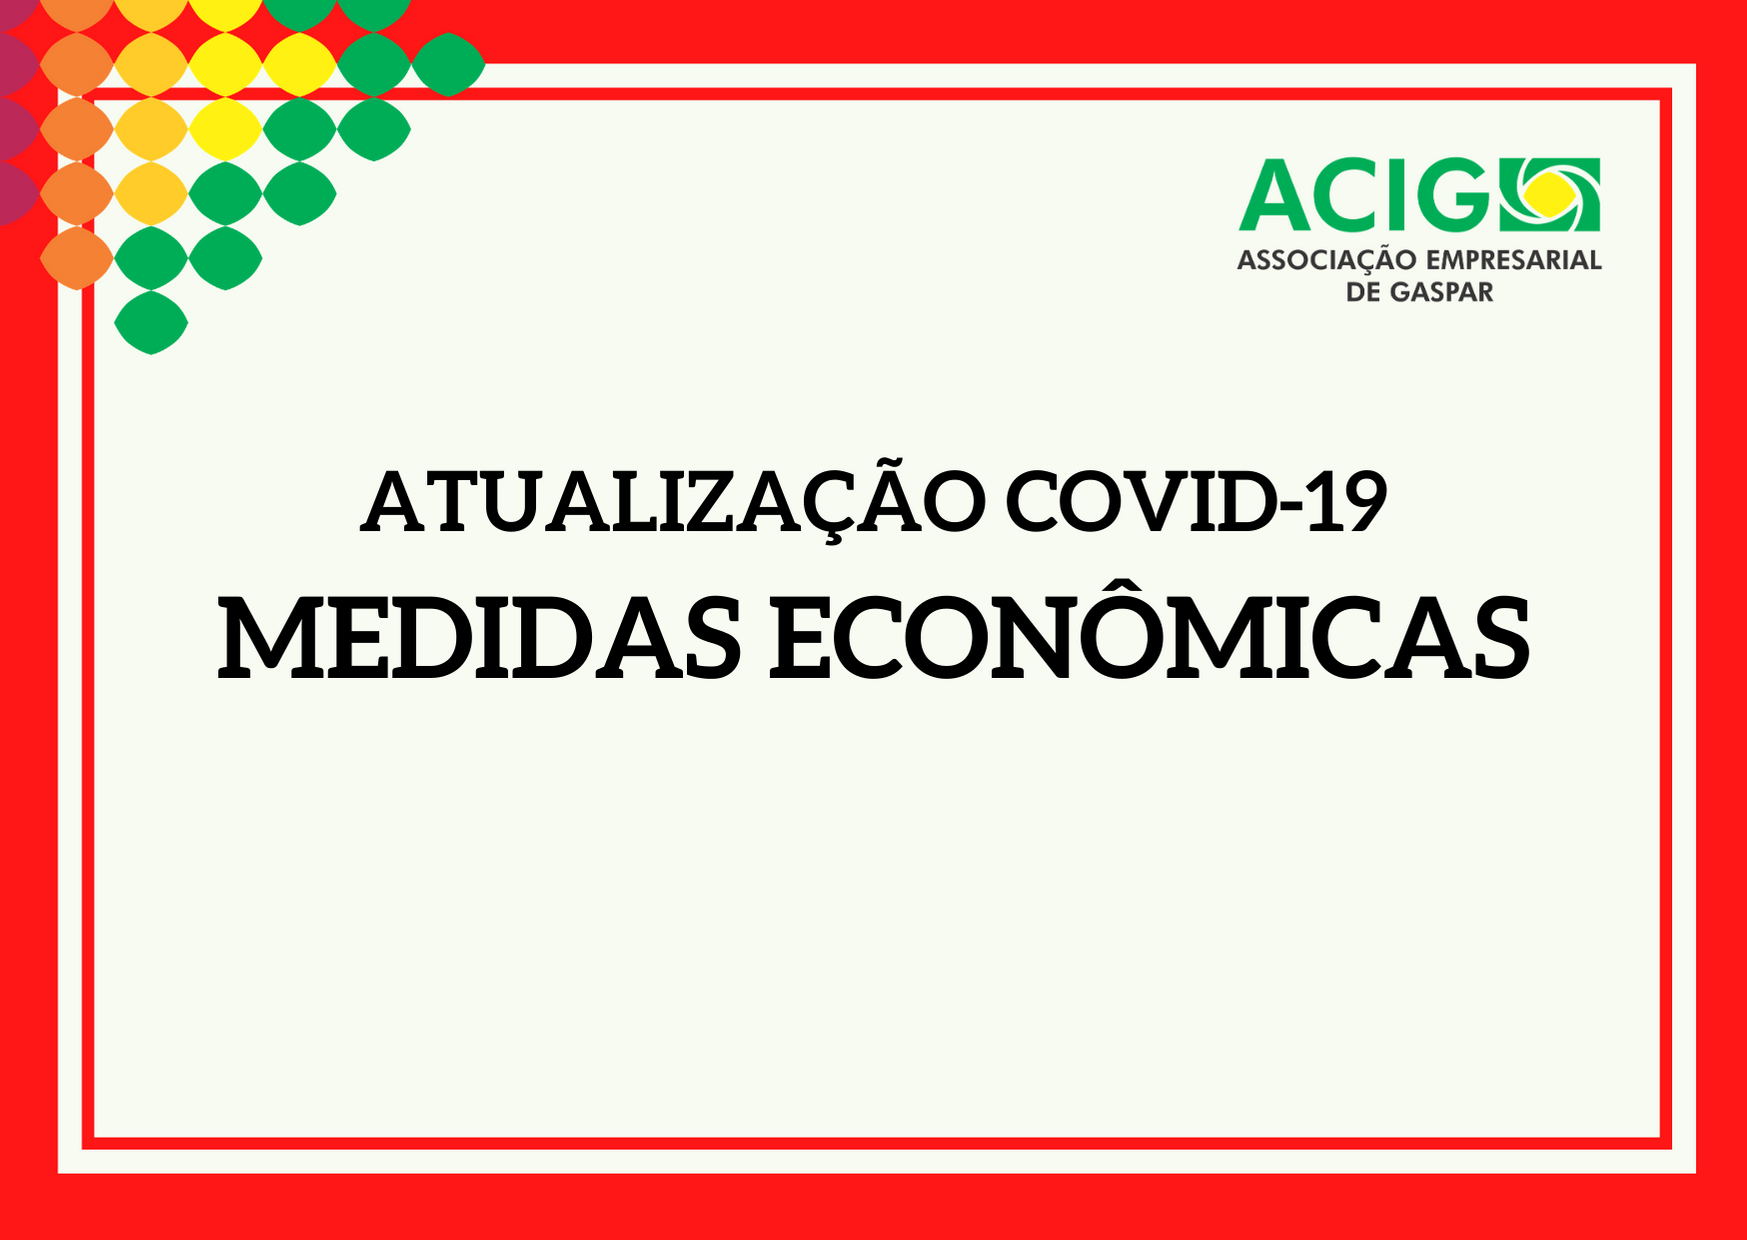 Atualização Covid-19 | Medidas Econômicas